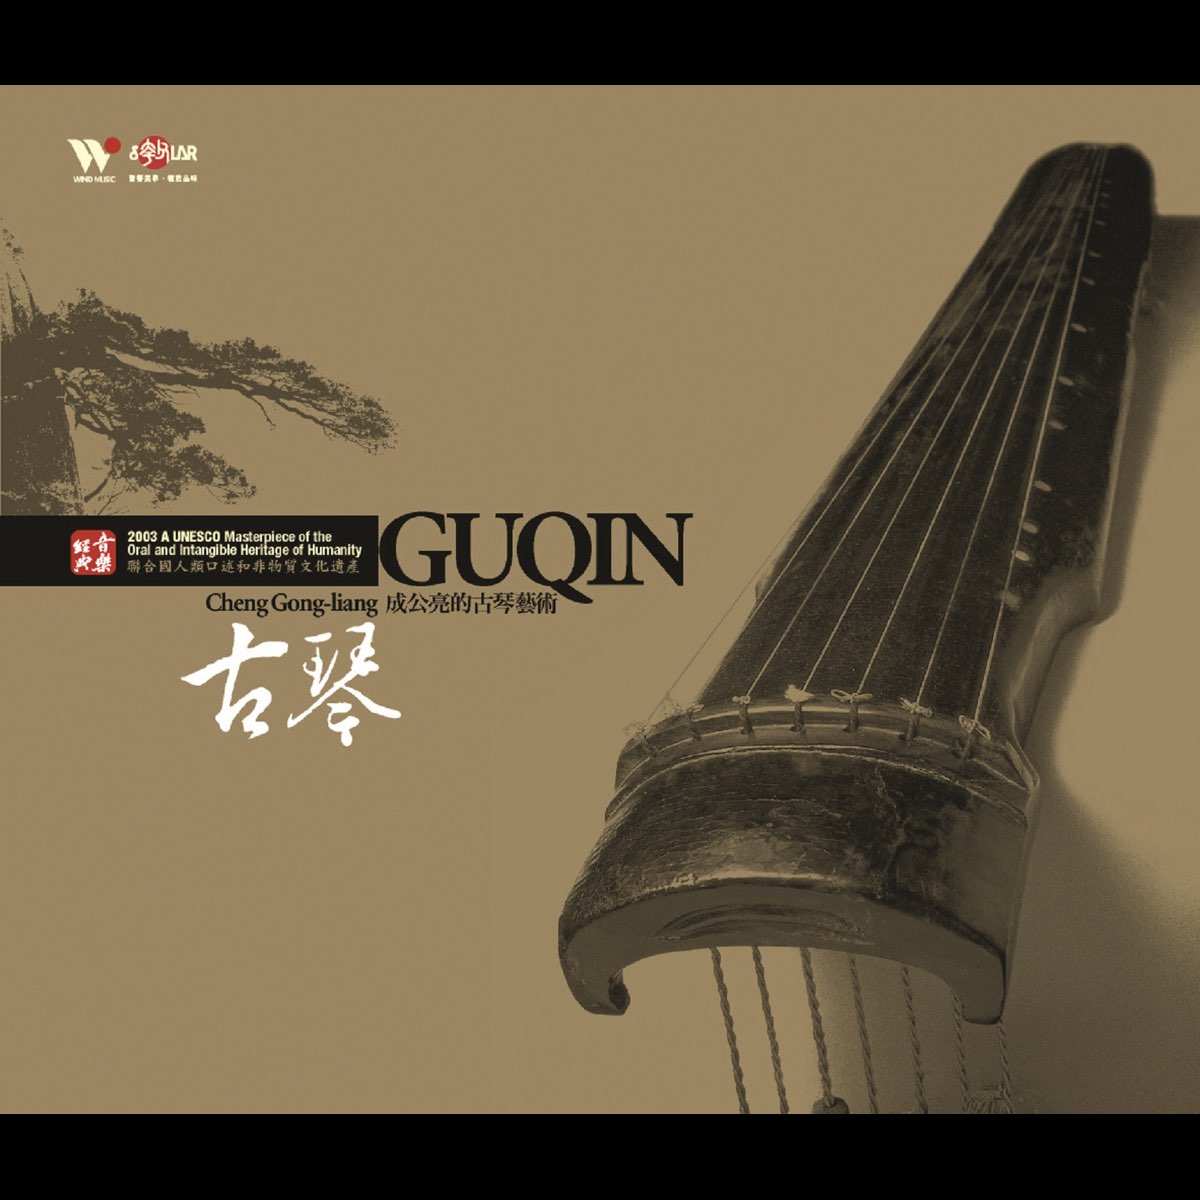 Guqin - Album by Cheng Gong-Liang - Apple Music